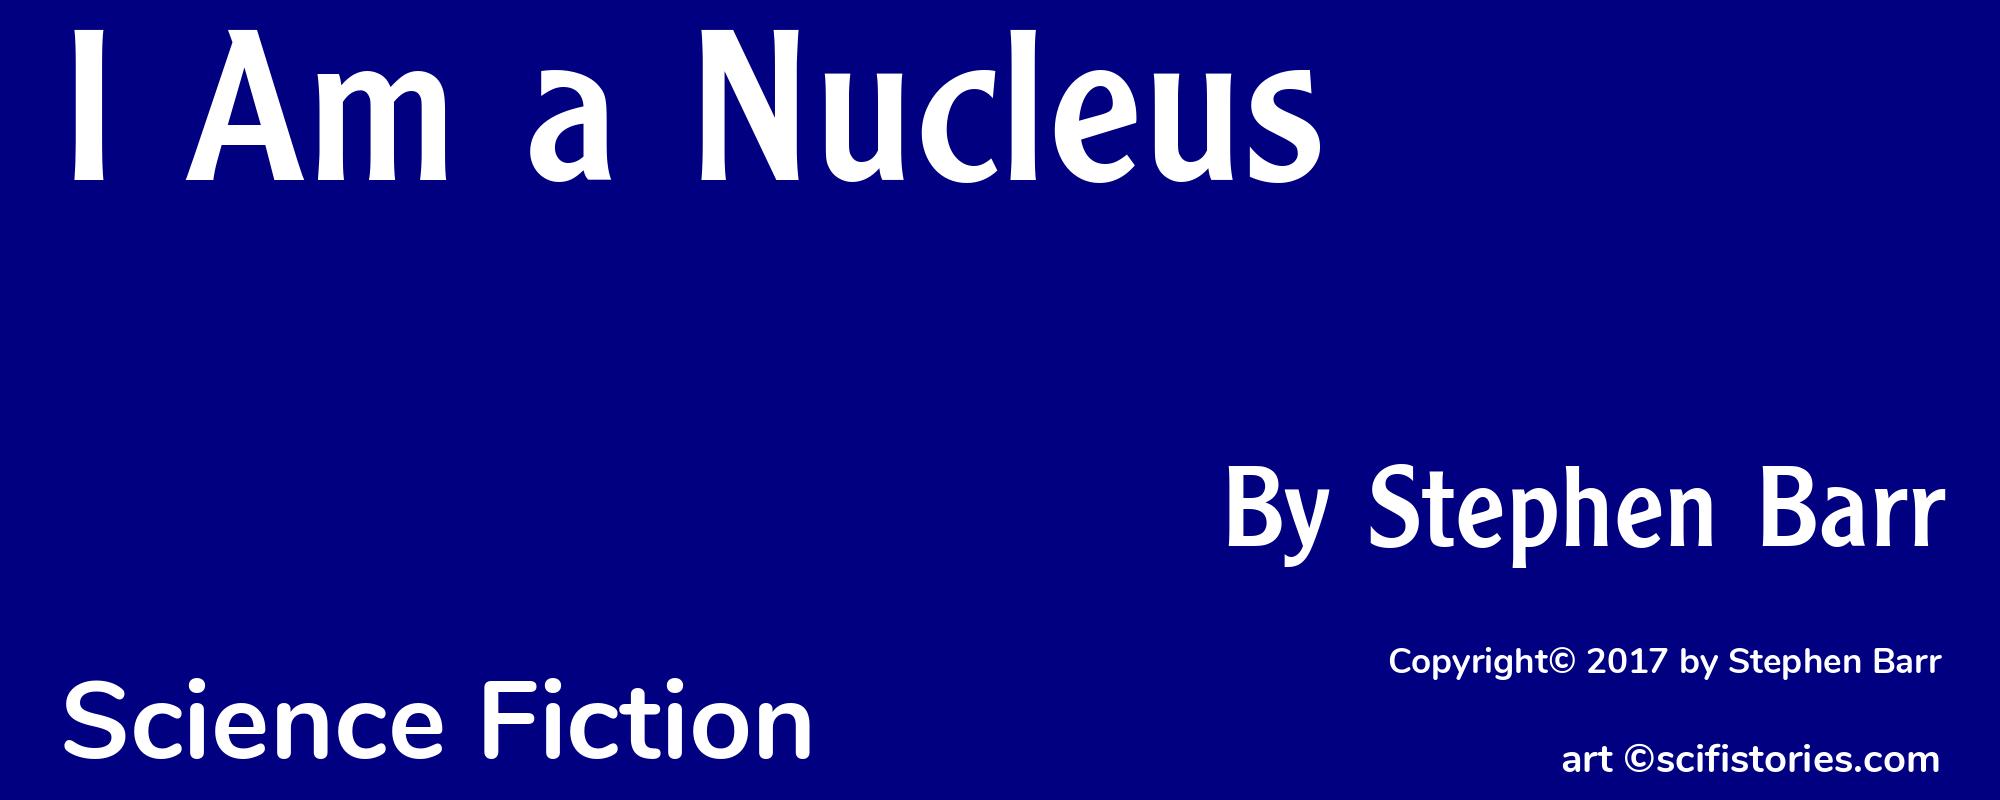 I Am a Nucleus - Cover